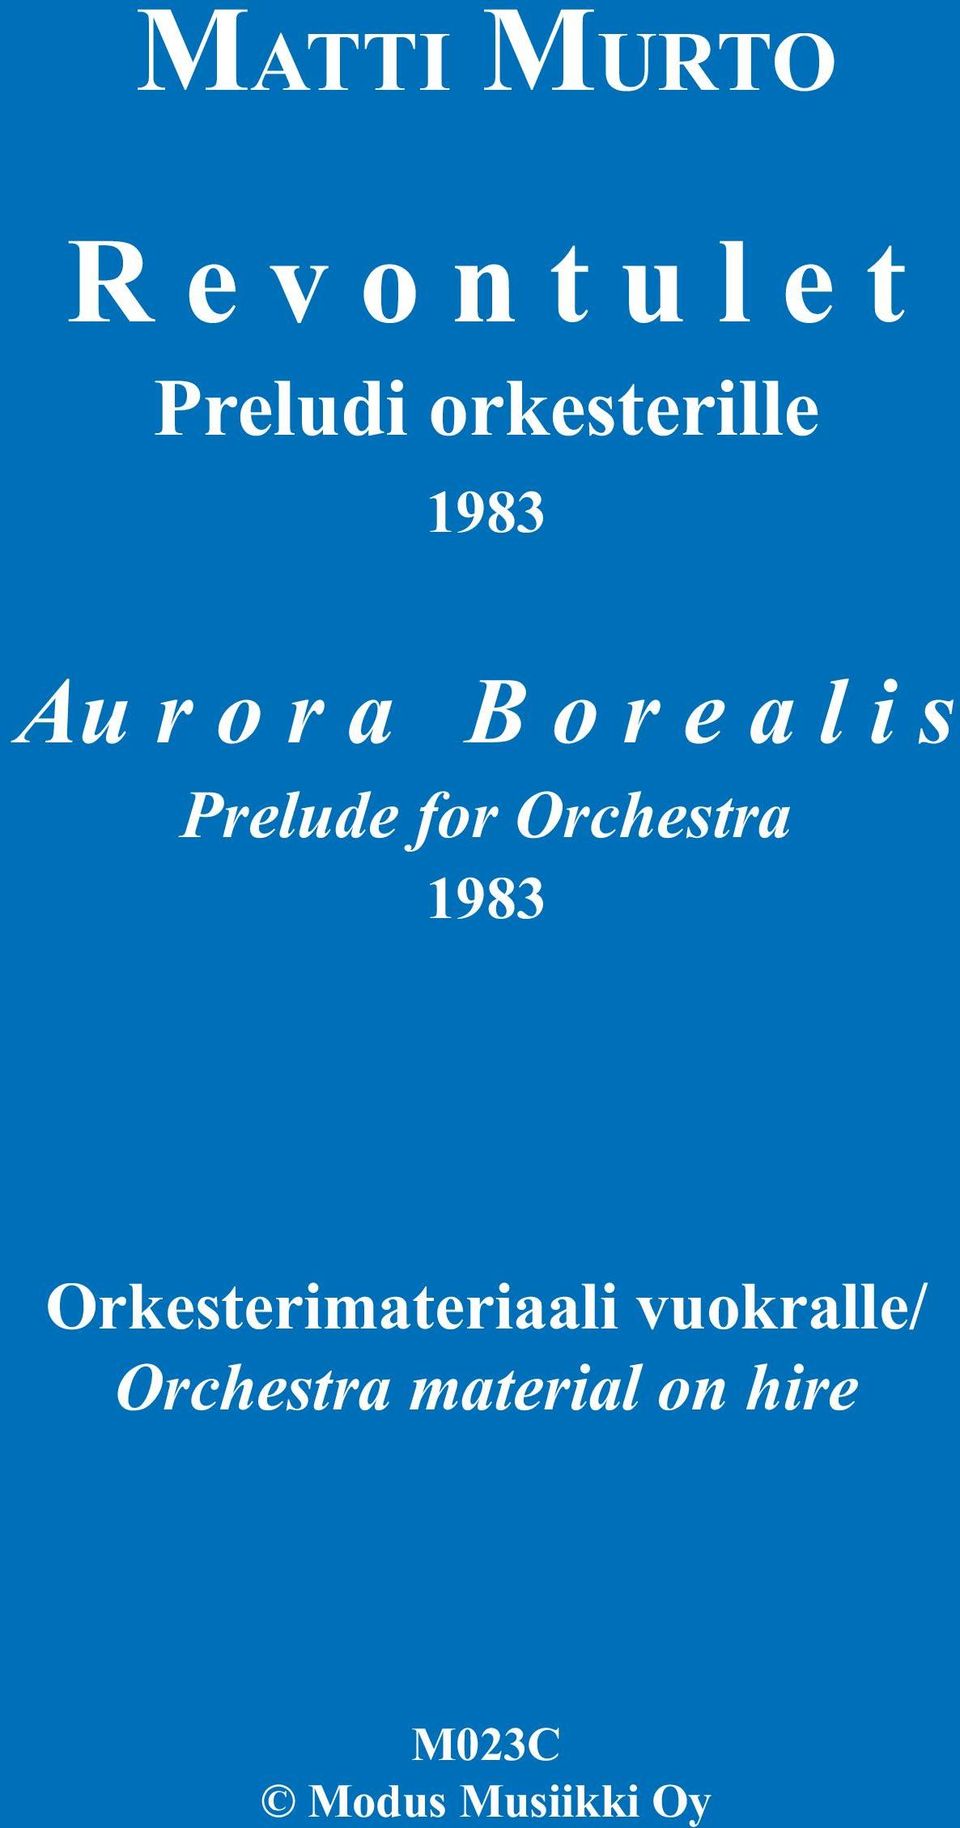 Prelude for Orchestra 1983 Orkesterimateriaali